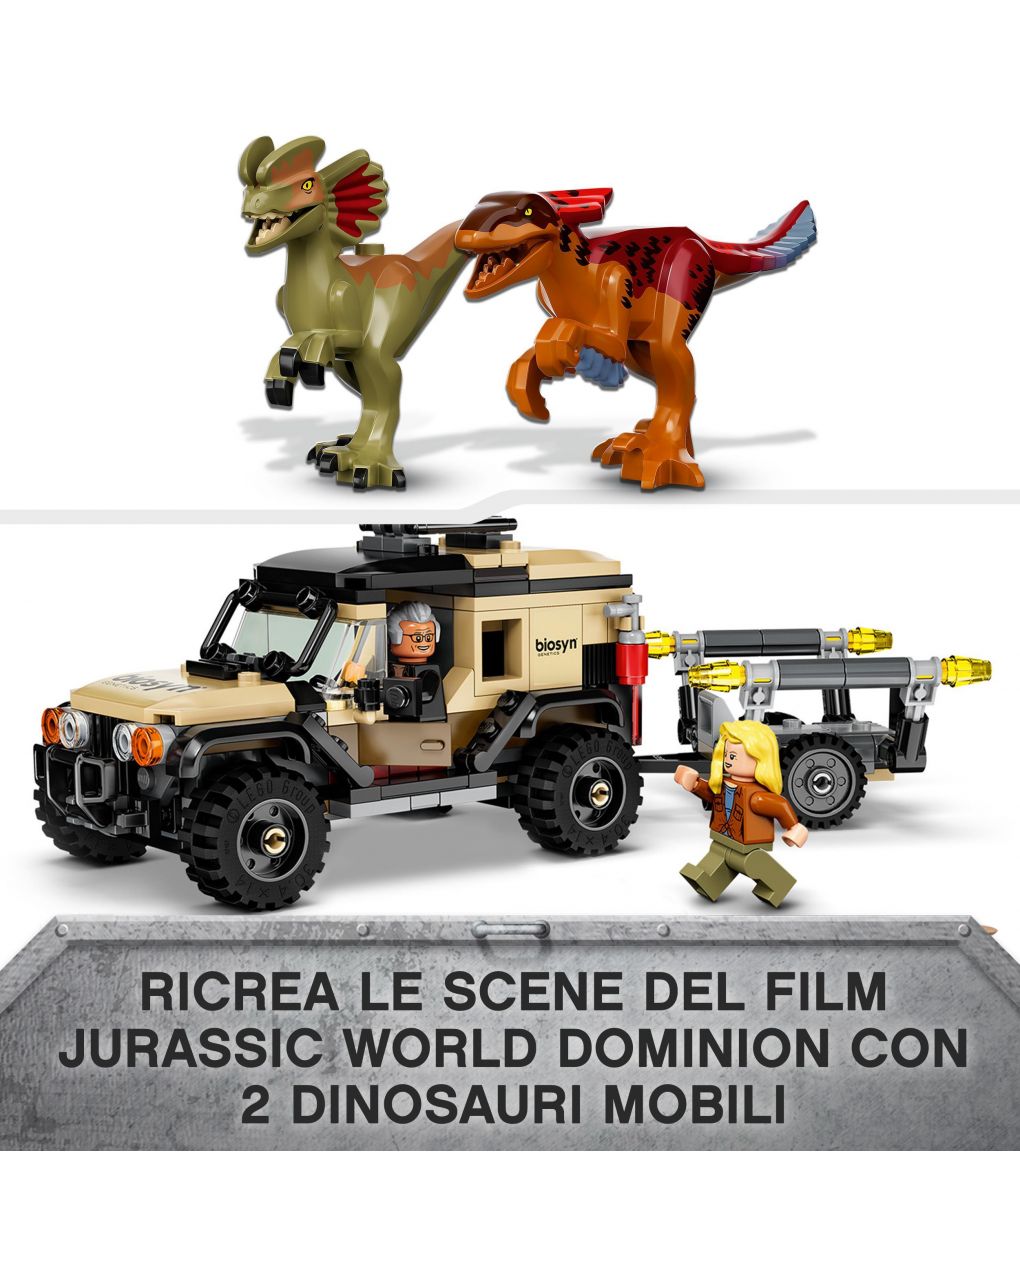 Trasporto del piroraptor e del dilofosauro 76951 - lego jurassic world - LEGO